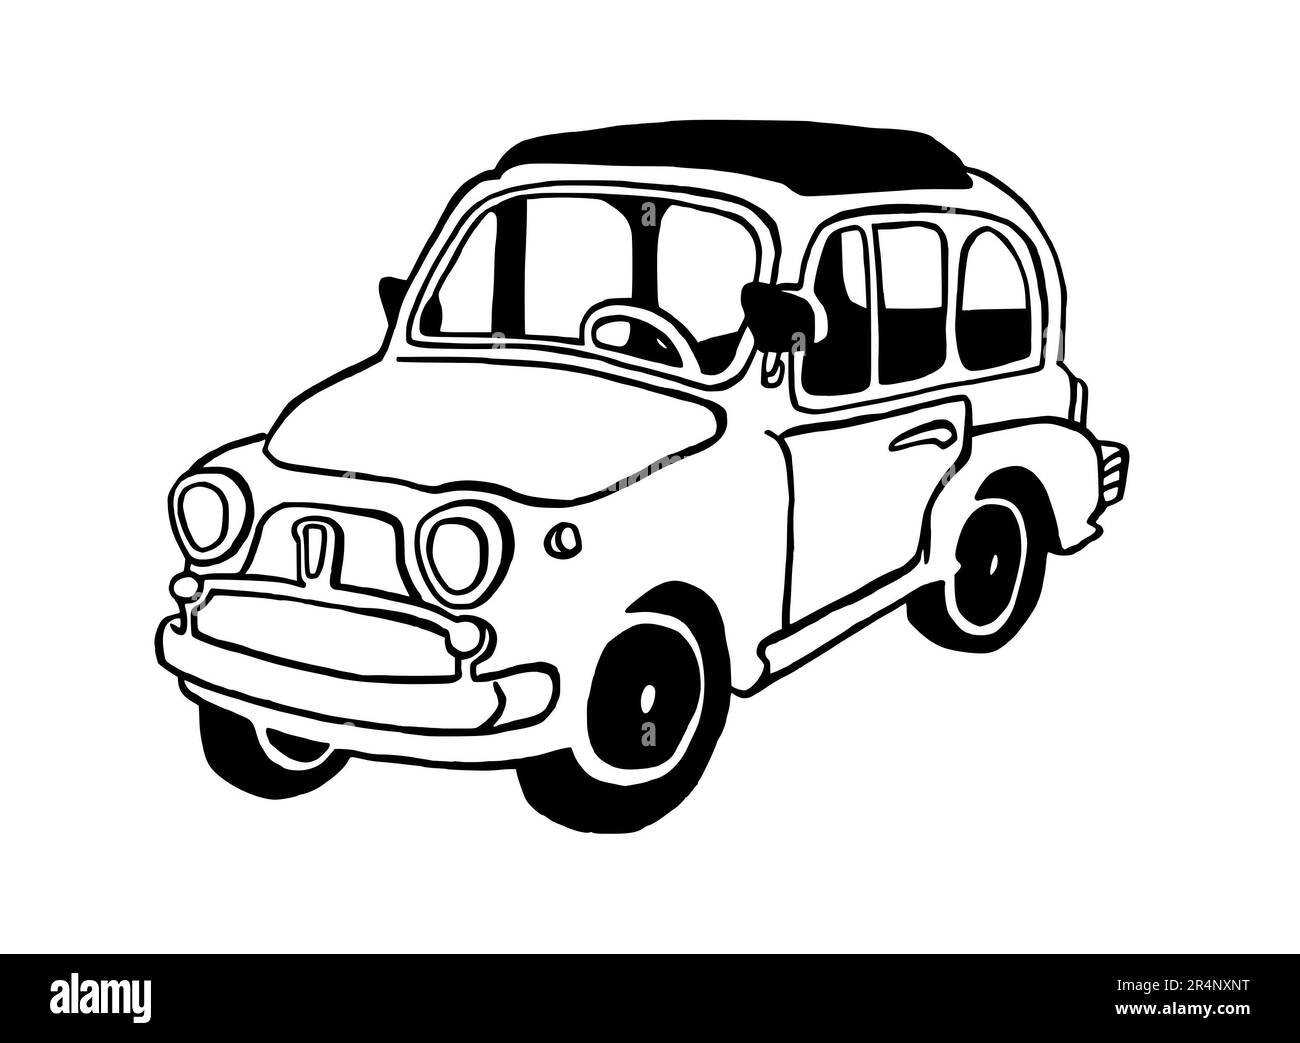 Disegno a mano Illustrazione di un'auto retrò, italiana, completa, isolata su sfondo bianco, con linea nera Foto Stock